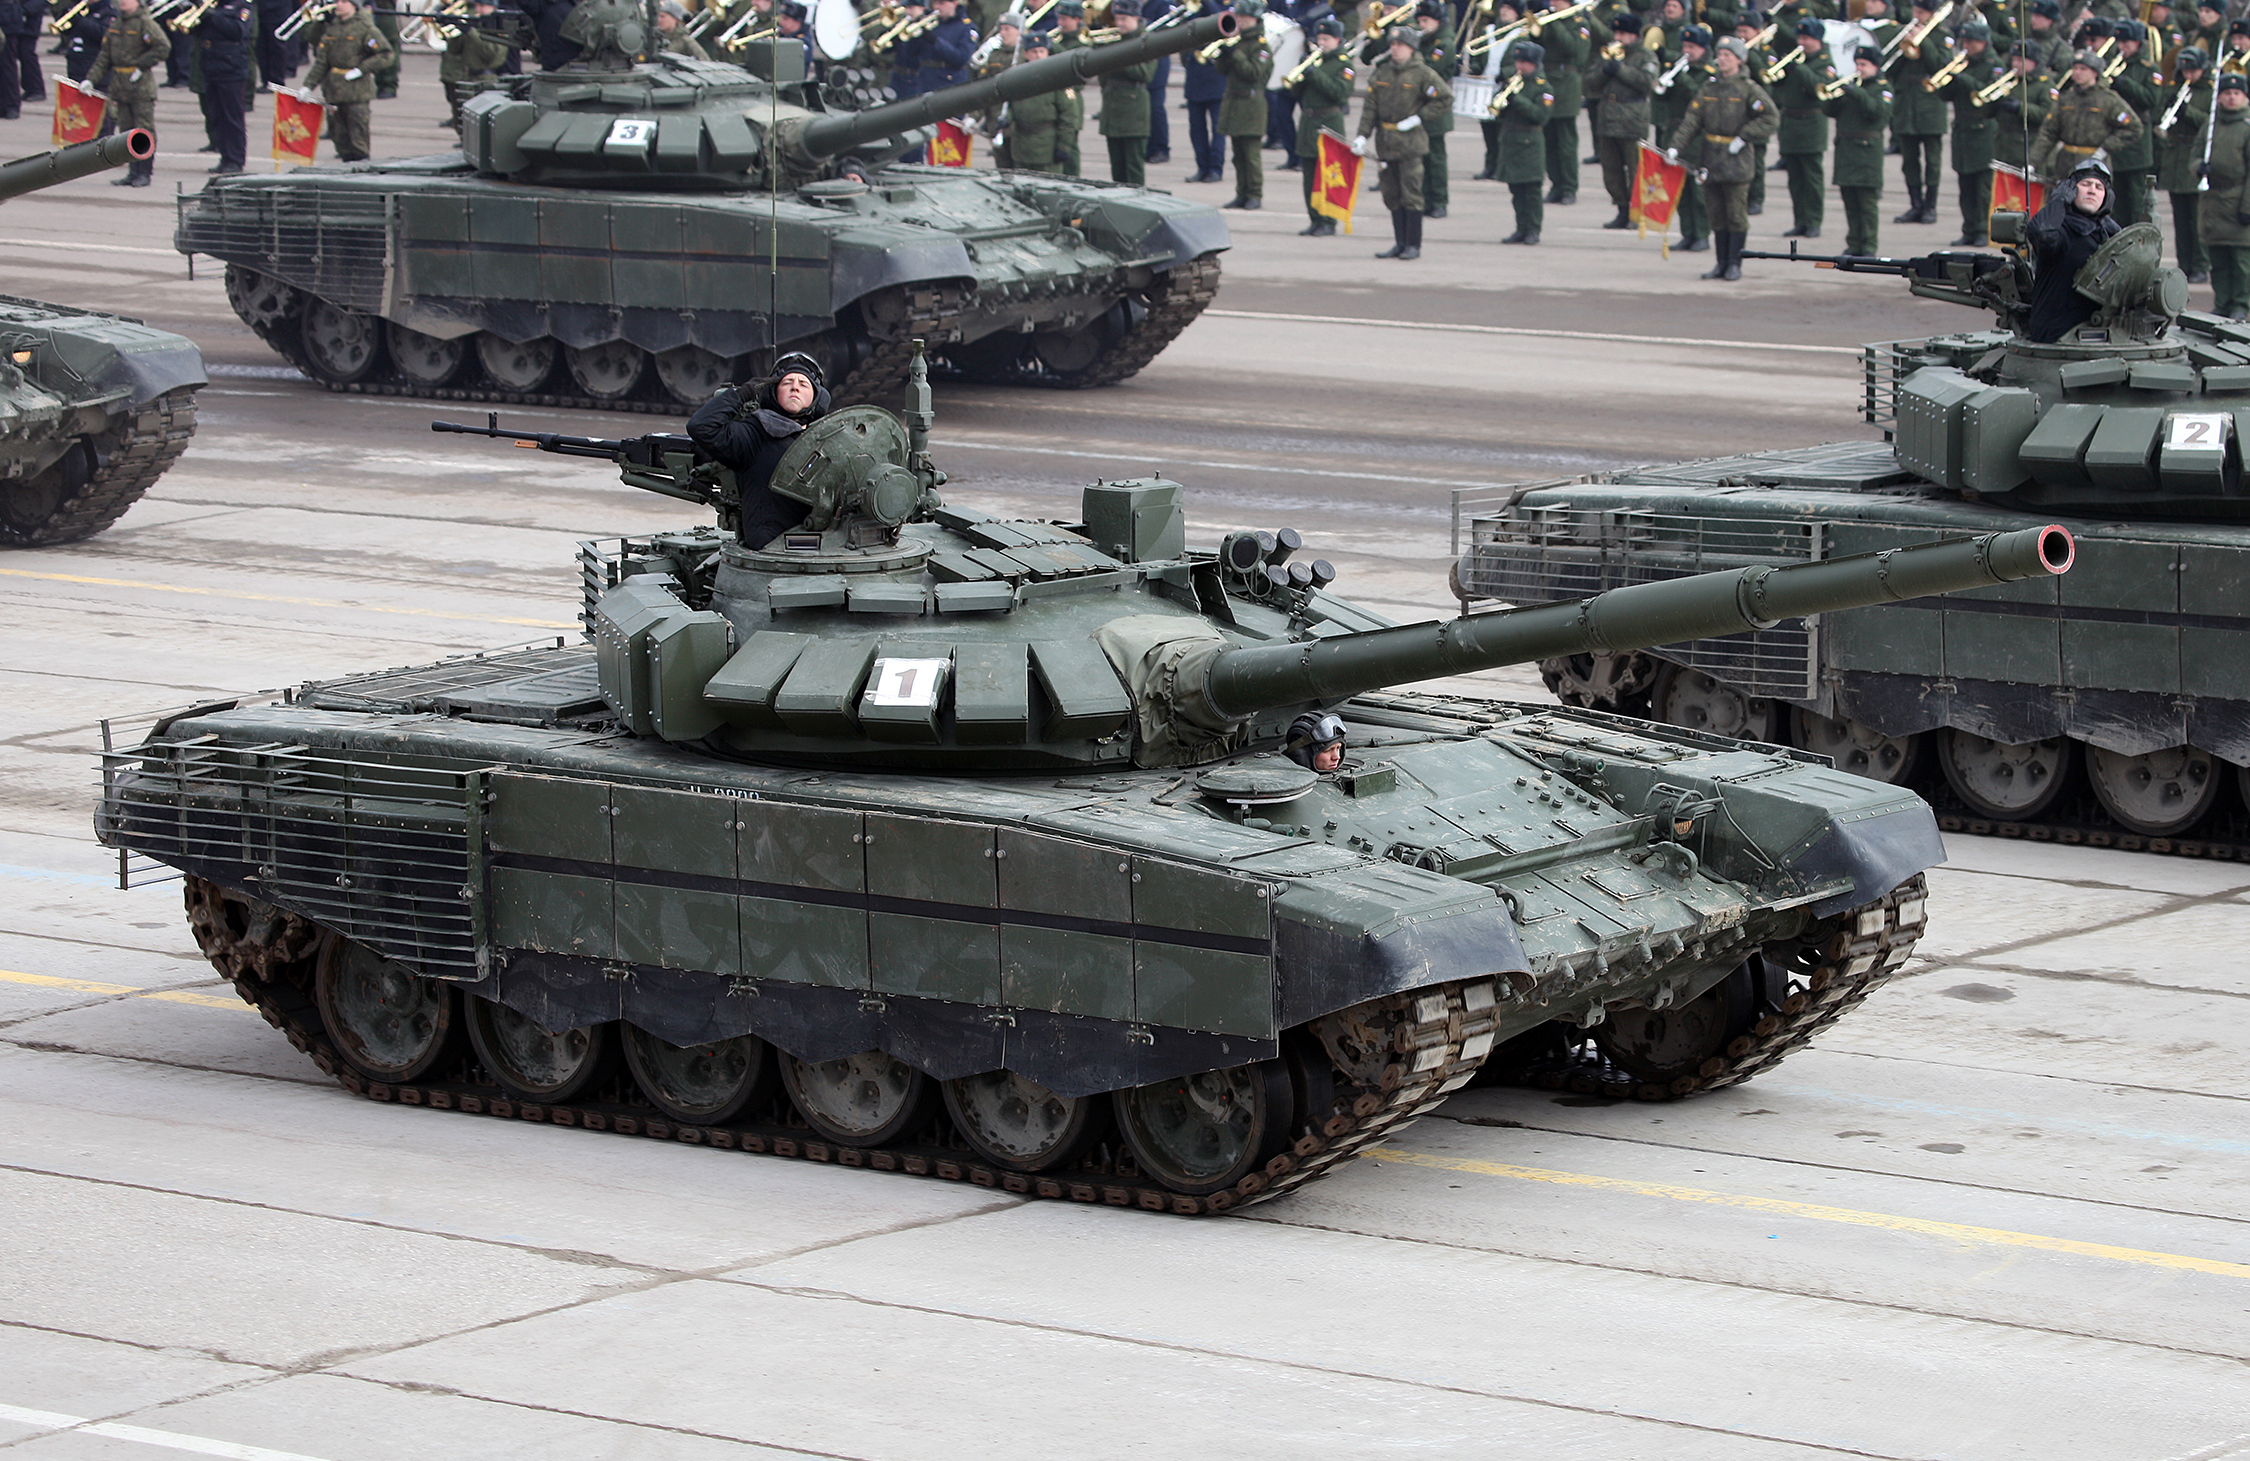 Модернизированный Т-72Б3 образца 2016 года с дополнительной защитой. Фото © Vitaly V. Kuzmin